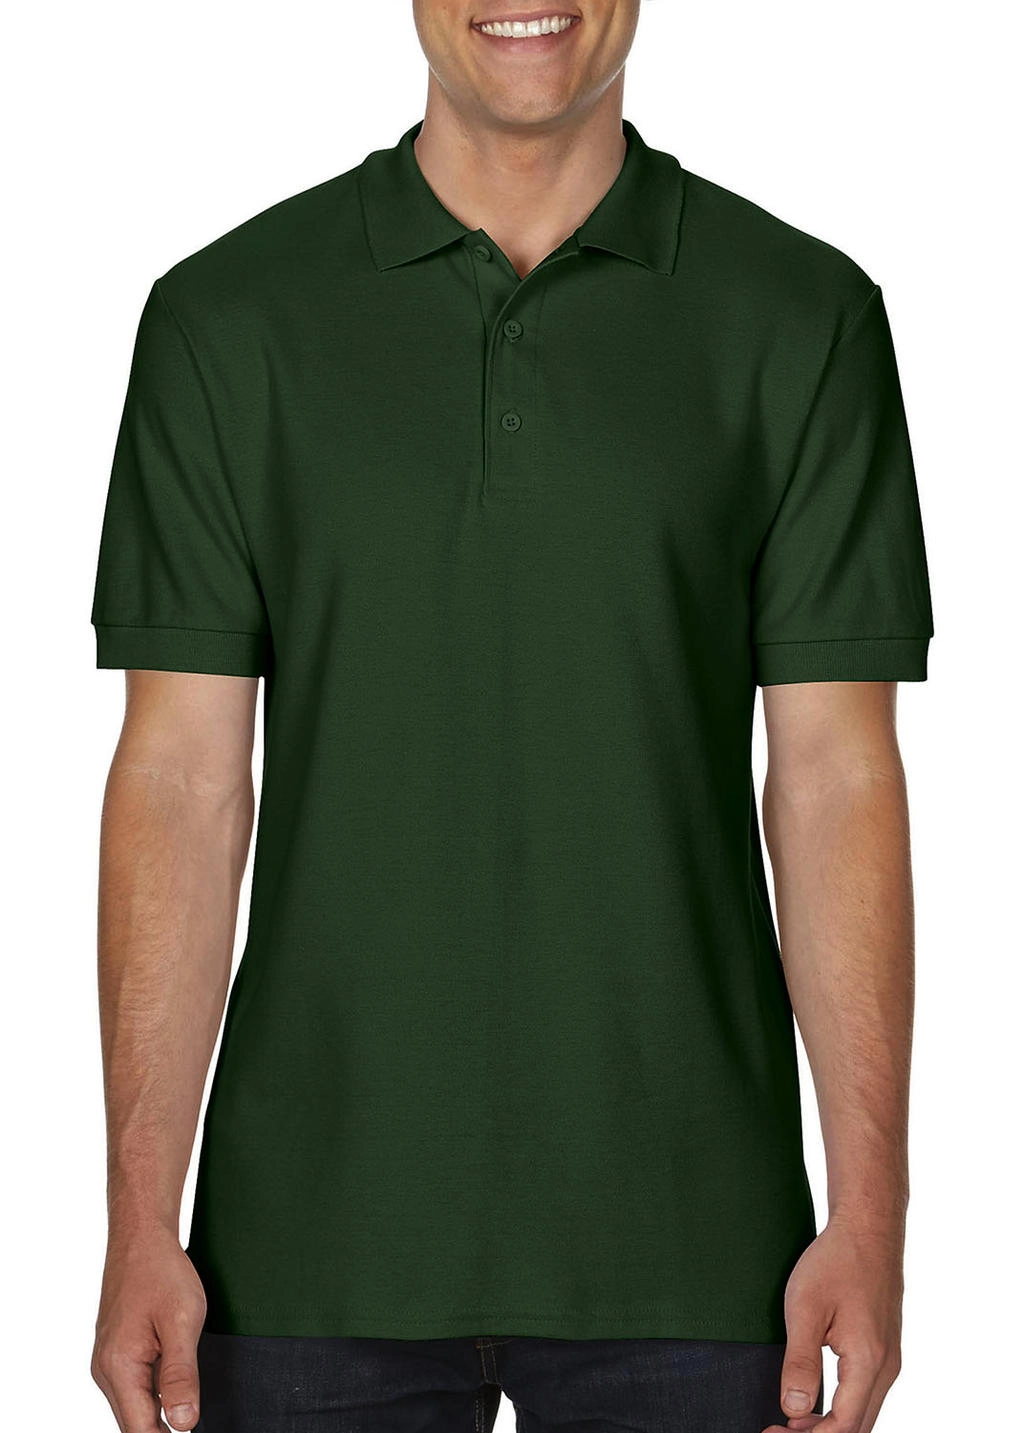 Premium Cotton Double Piqué Polo zum Besticken und Bedrucken in der Farbe Forest Green mit Ihren Logo, Schriftzug oder Motiv.